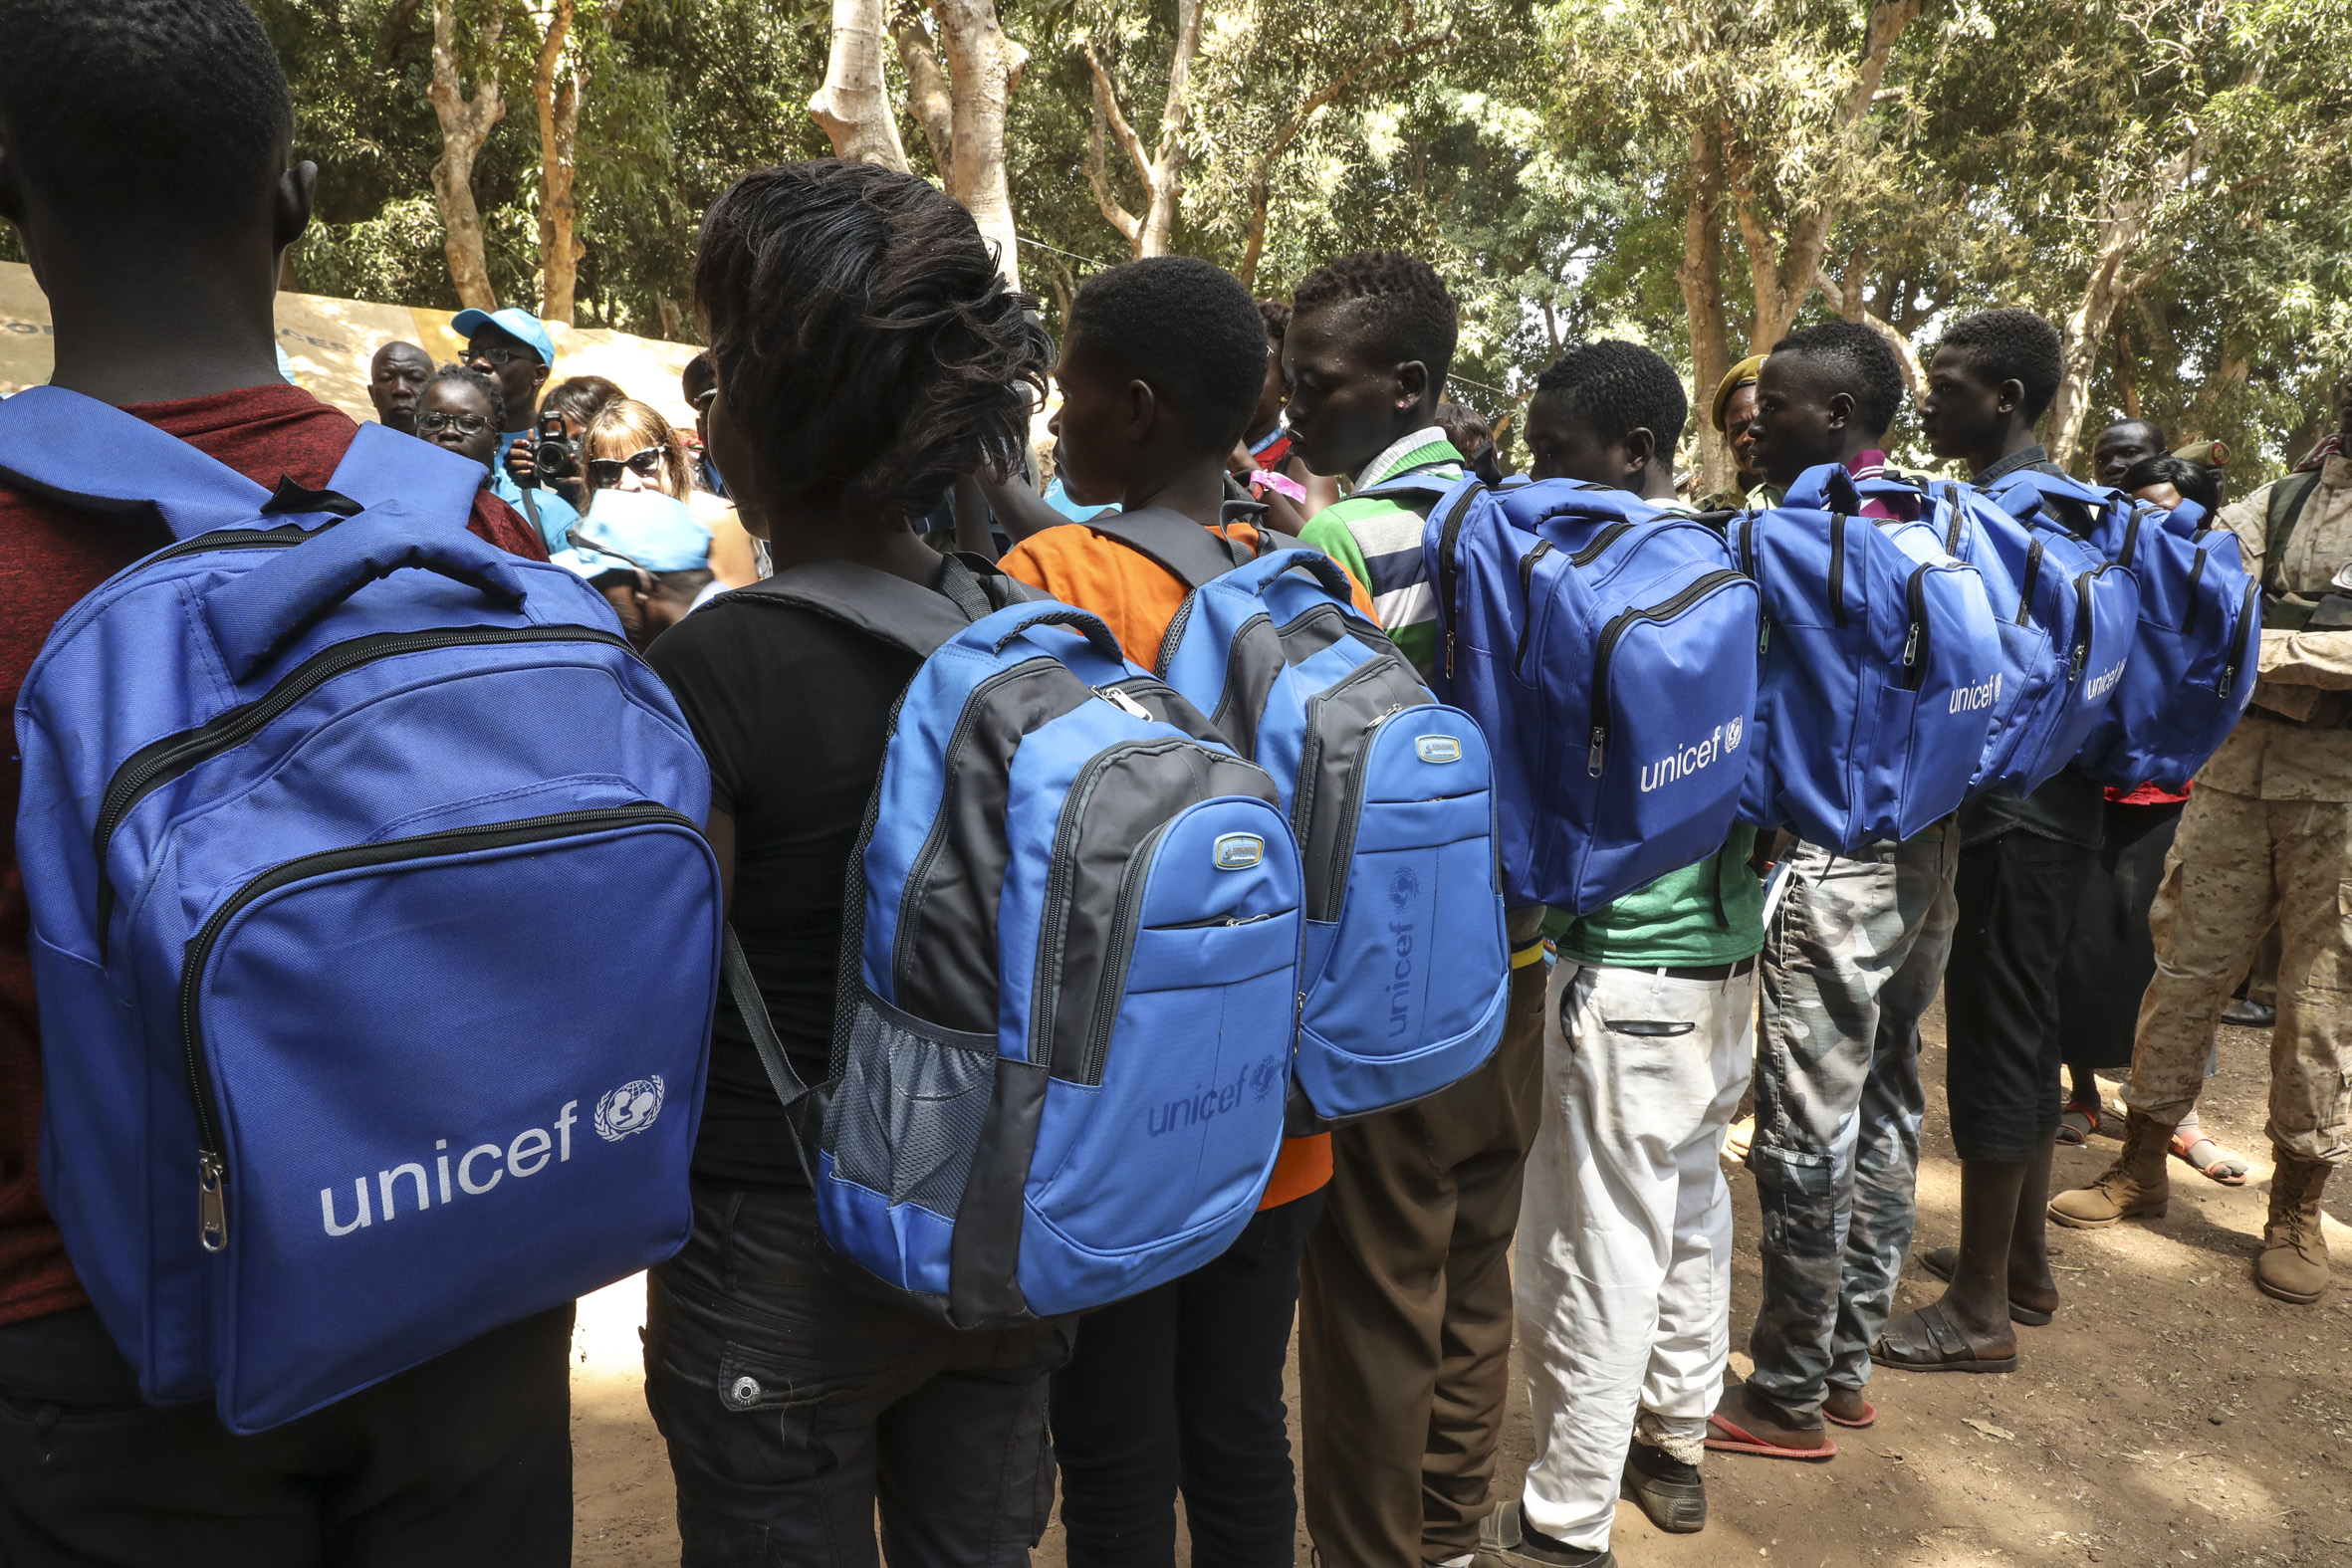 En rekke barn med skolesekker fra Unicef.